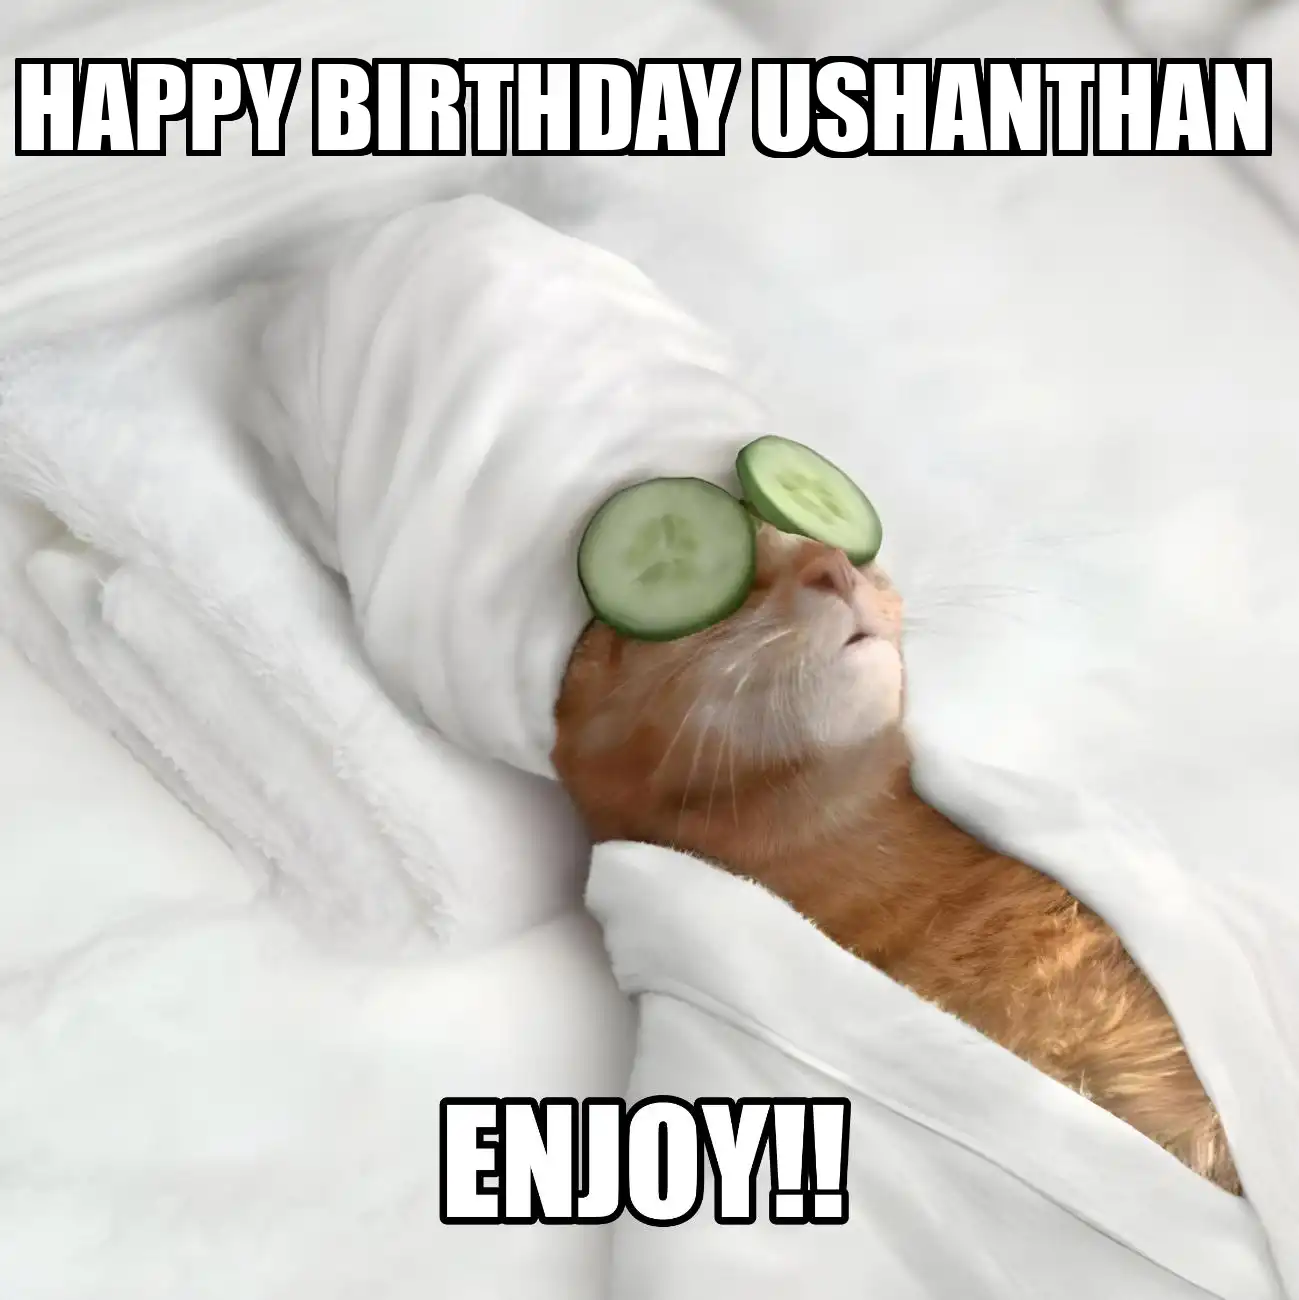 Happy Birthday Ushanthan Enjoy Cat Meme